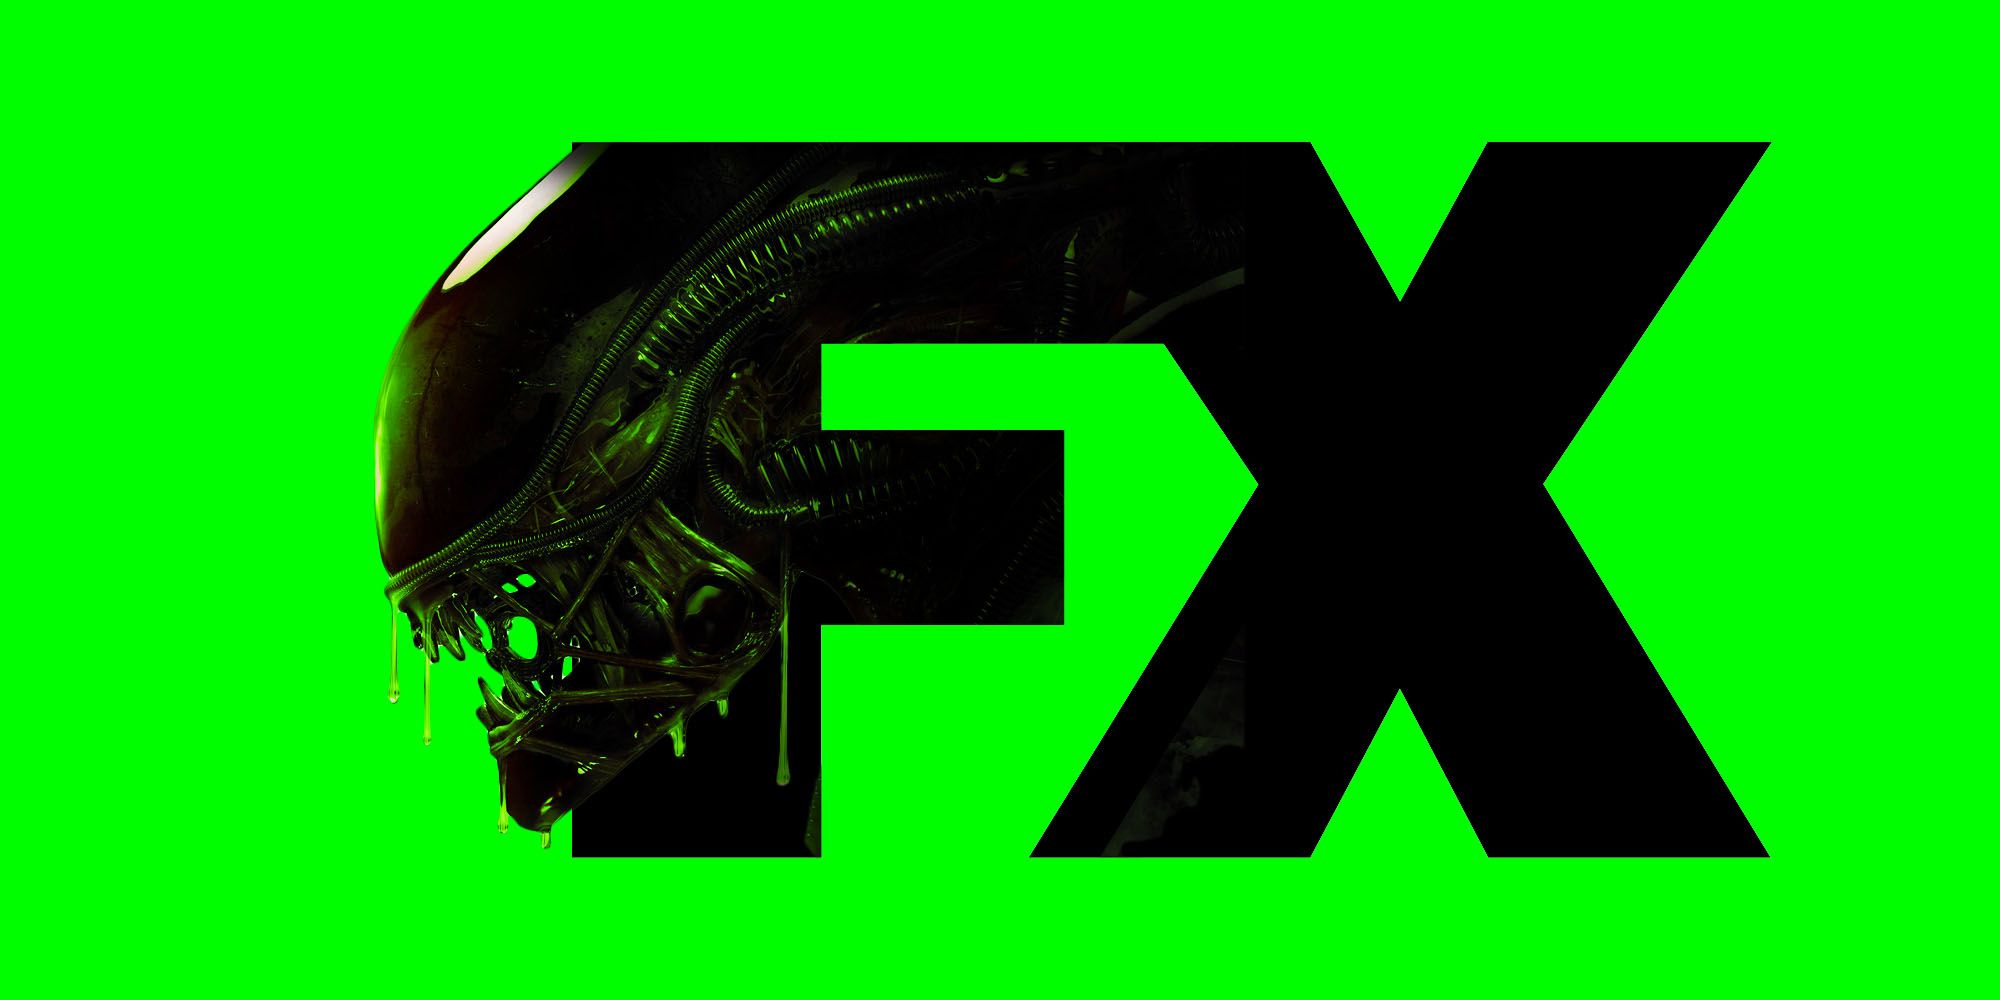 Actualizaciones de Alien Show: fecha de lanzamiento, reparto y detalles de la historia